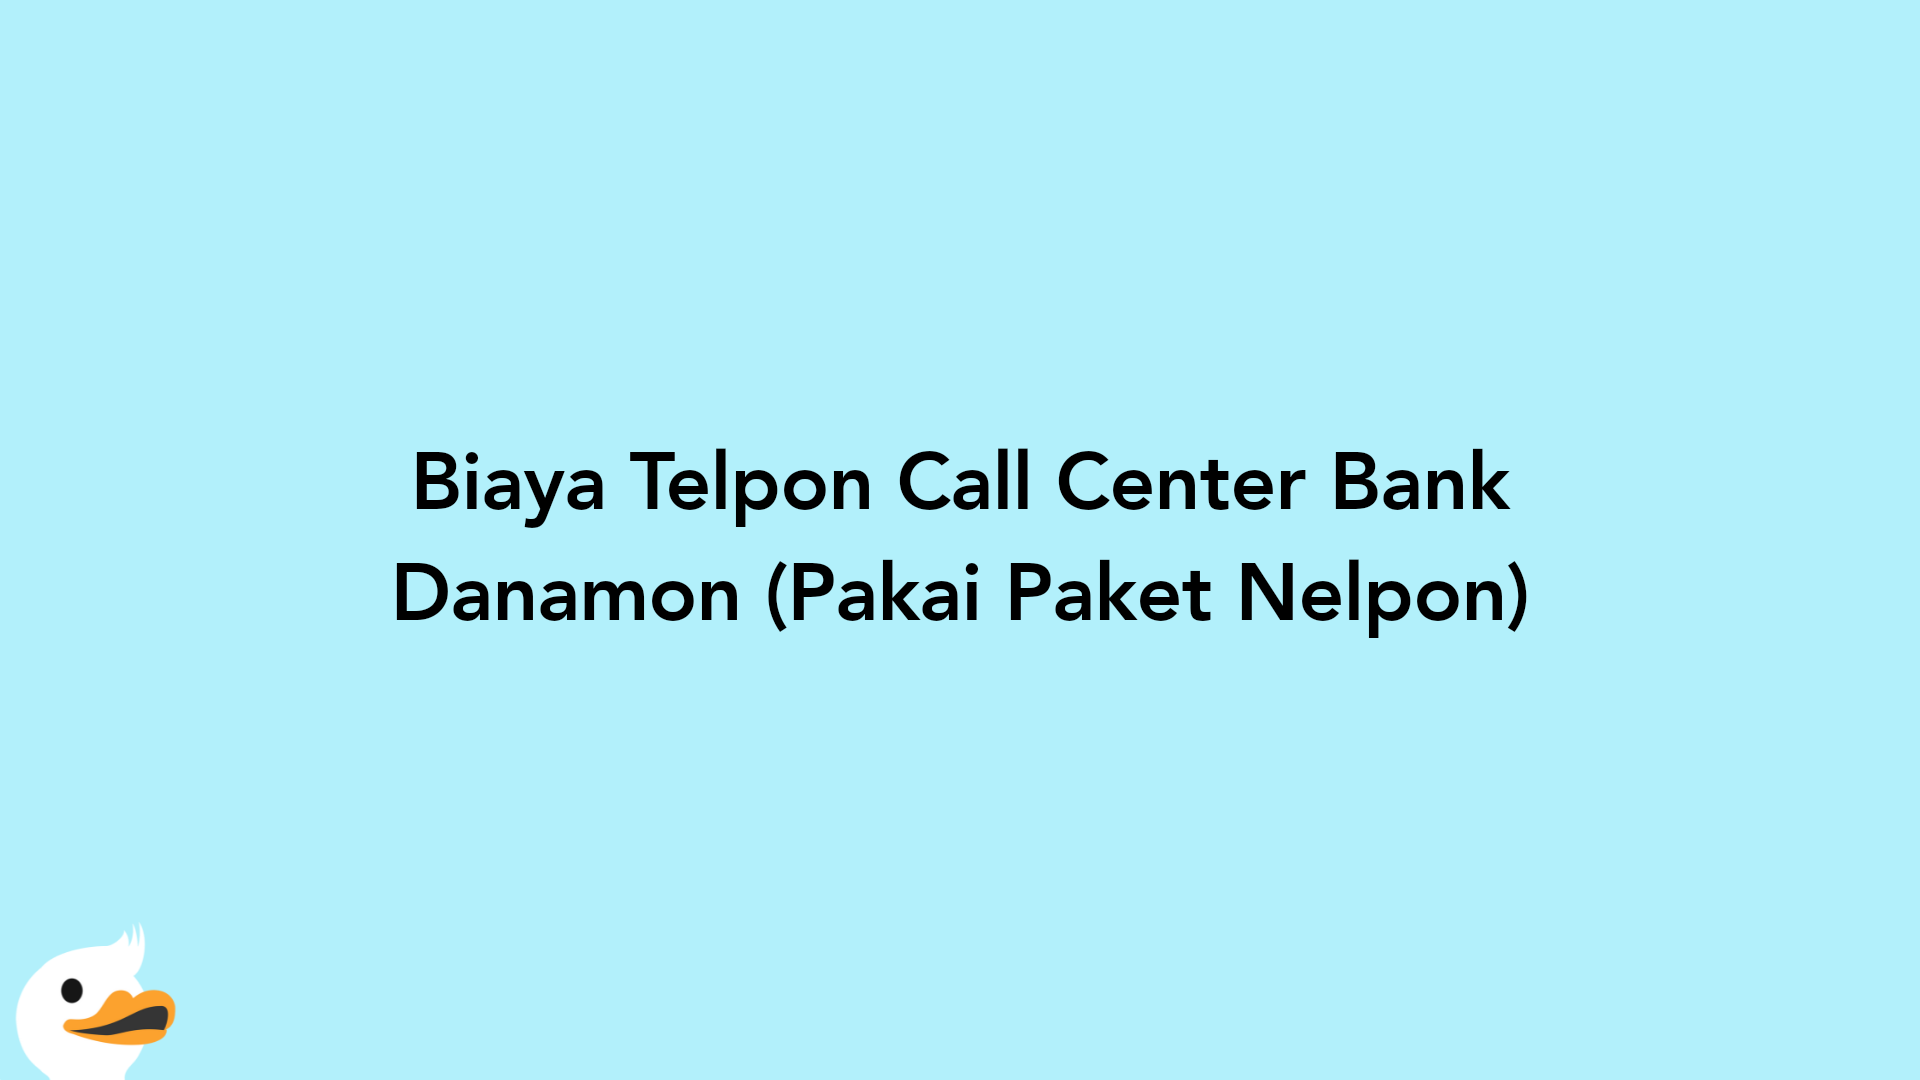 Biaya Telpon Call Center Bank Danamon (Pakai Paket Nelpon)